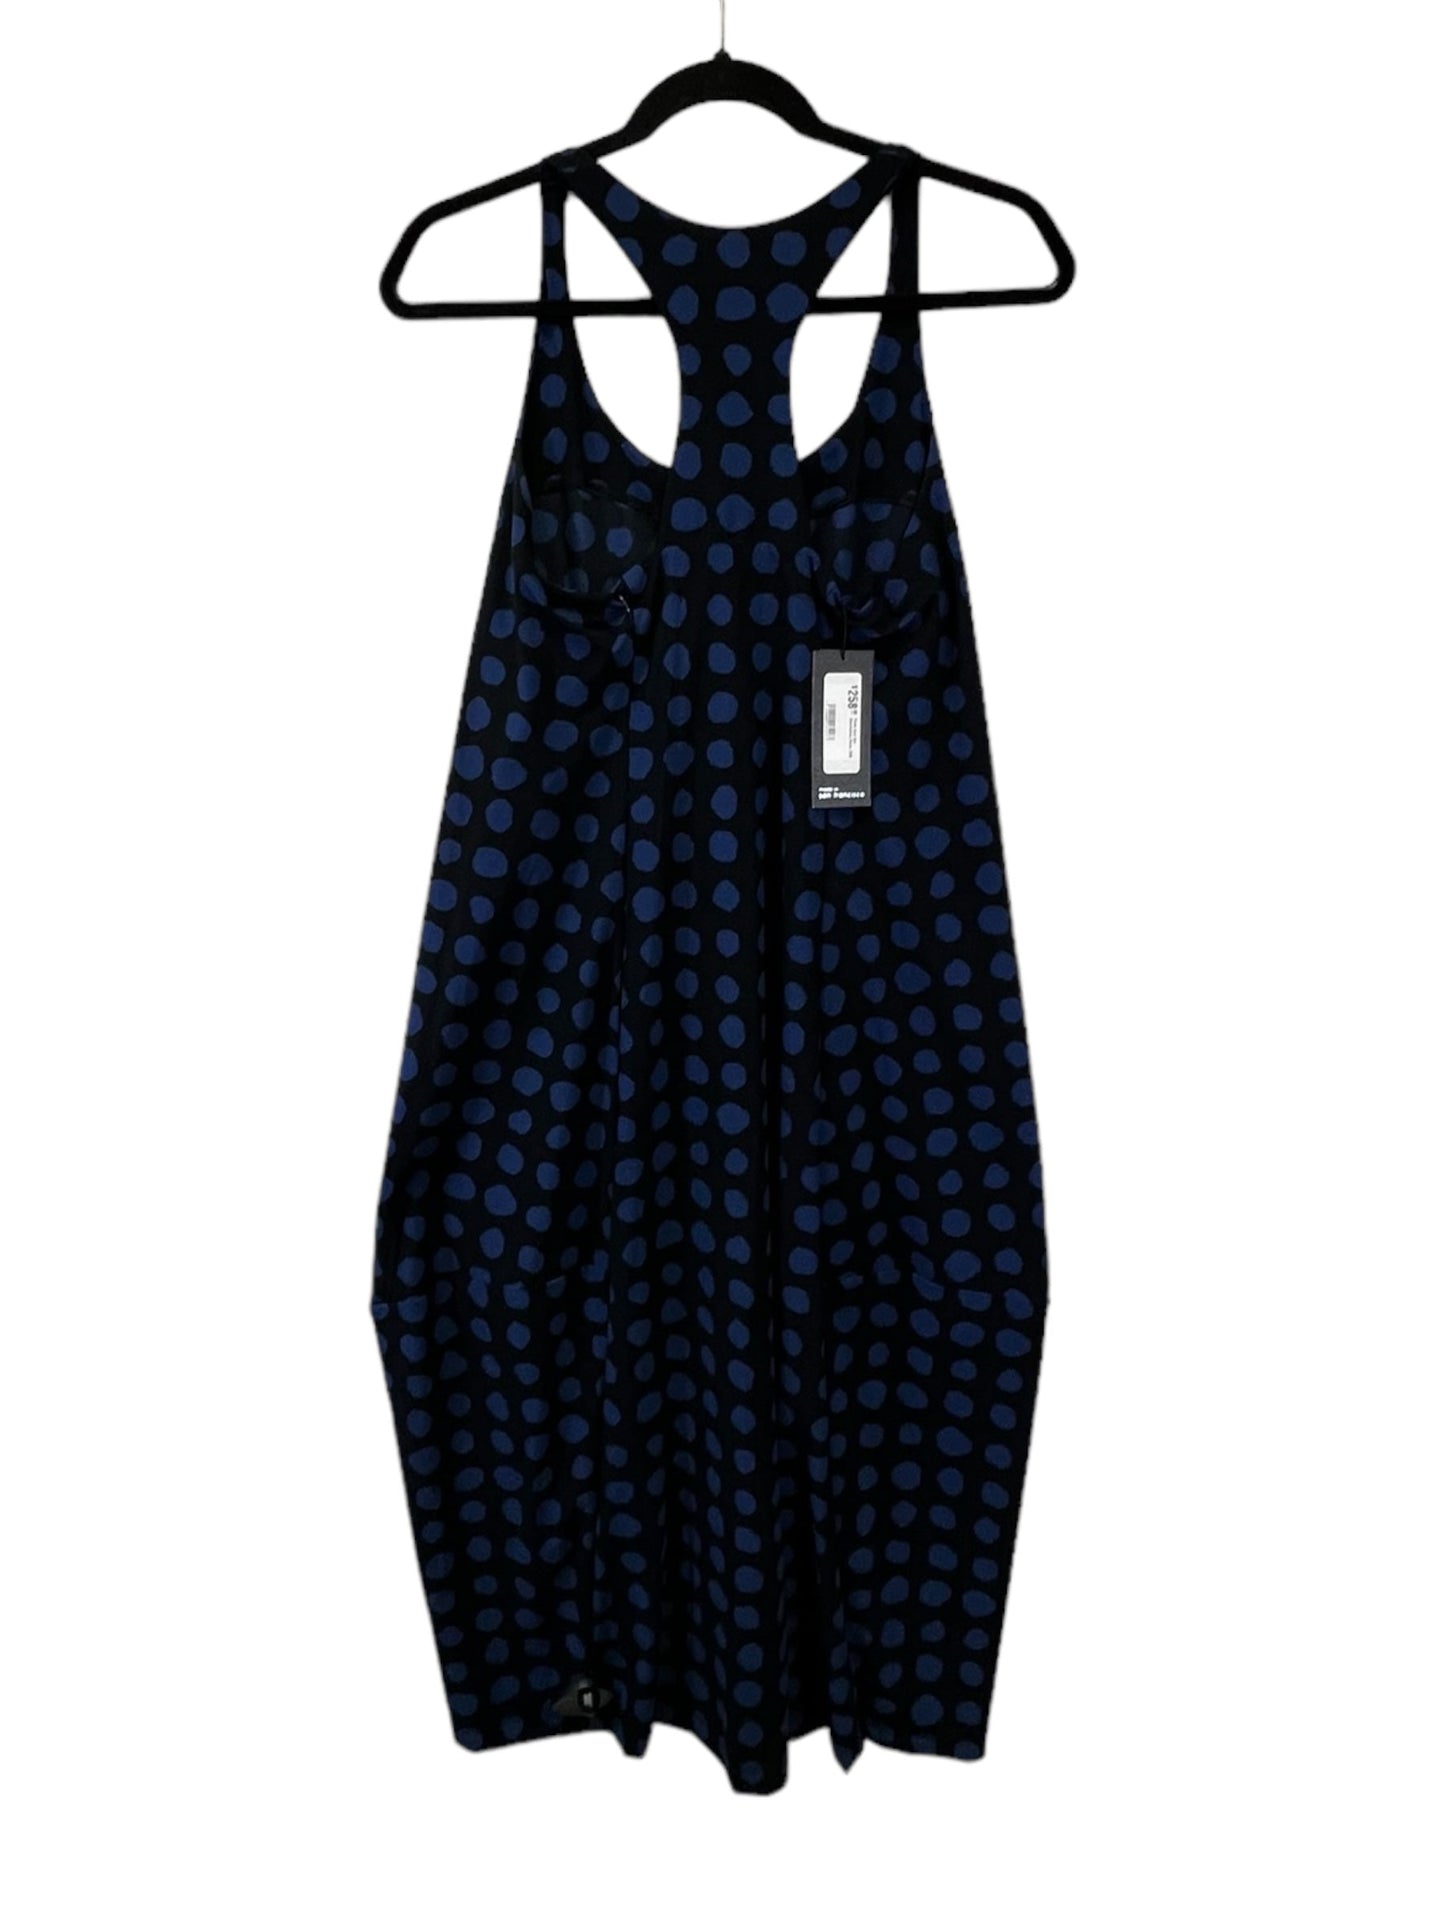 Black & Blue Dress Designer Cmb, Size S